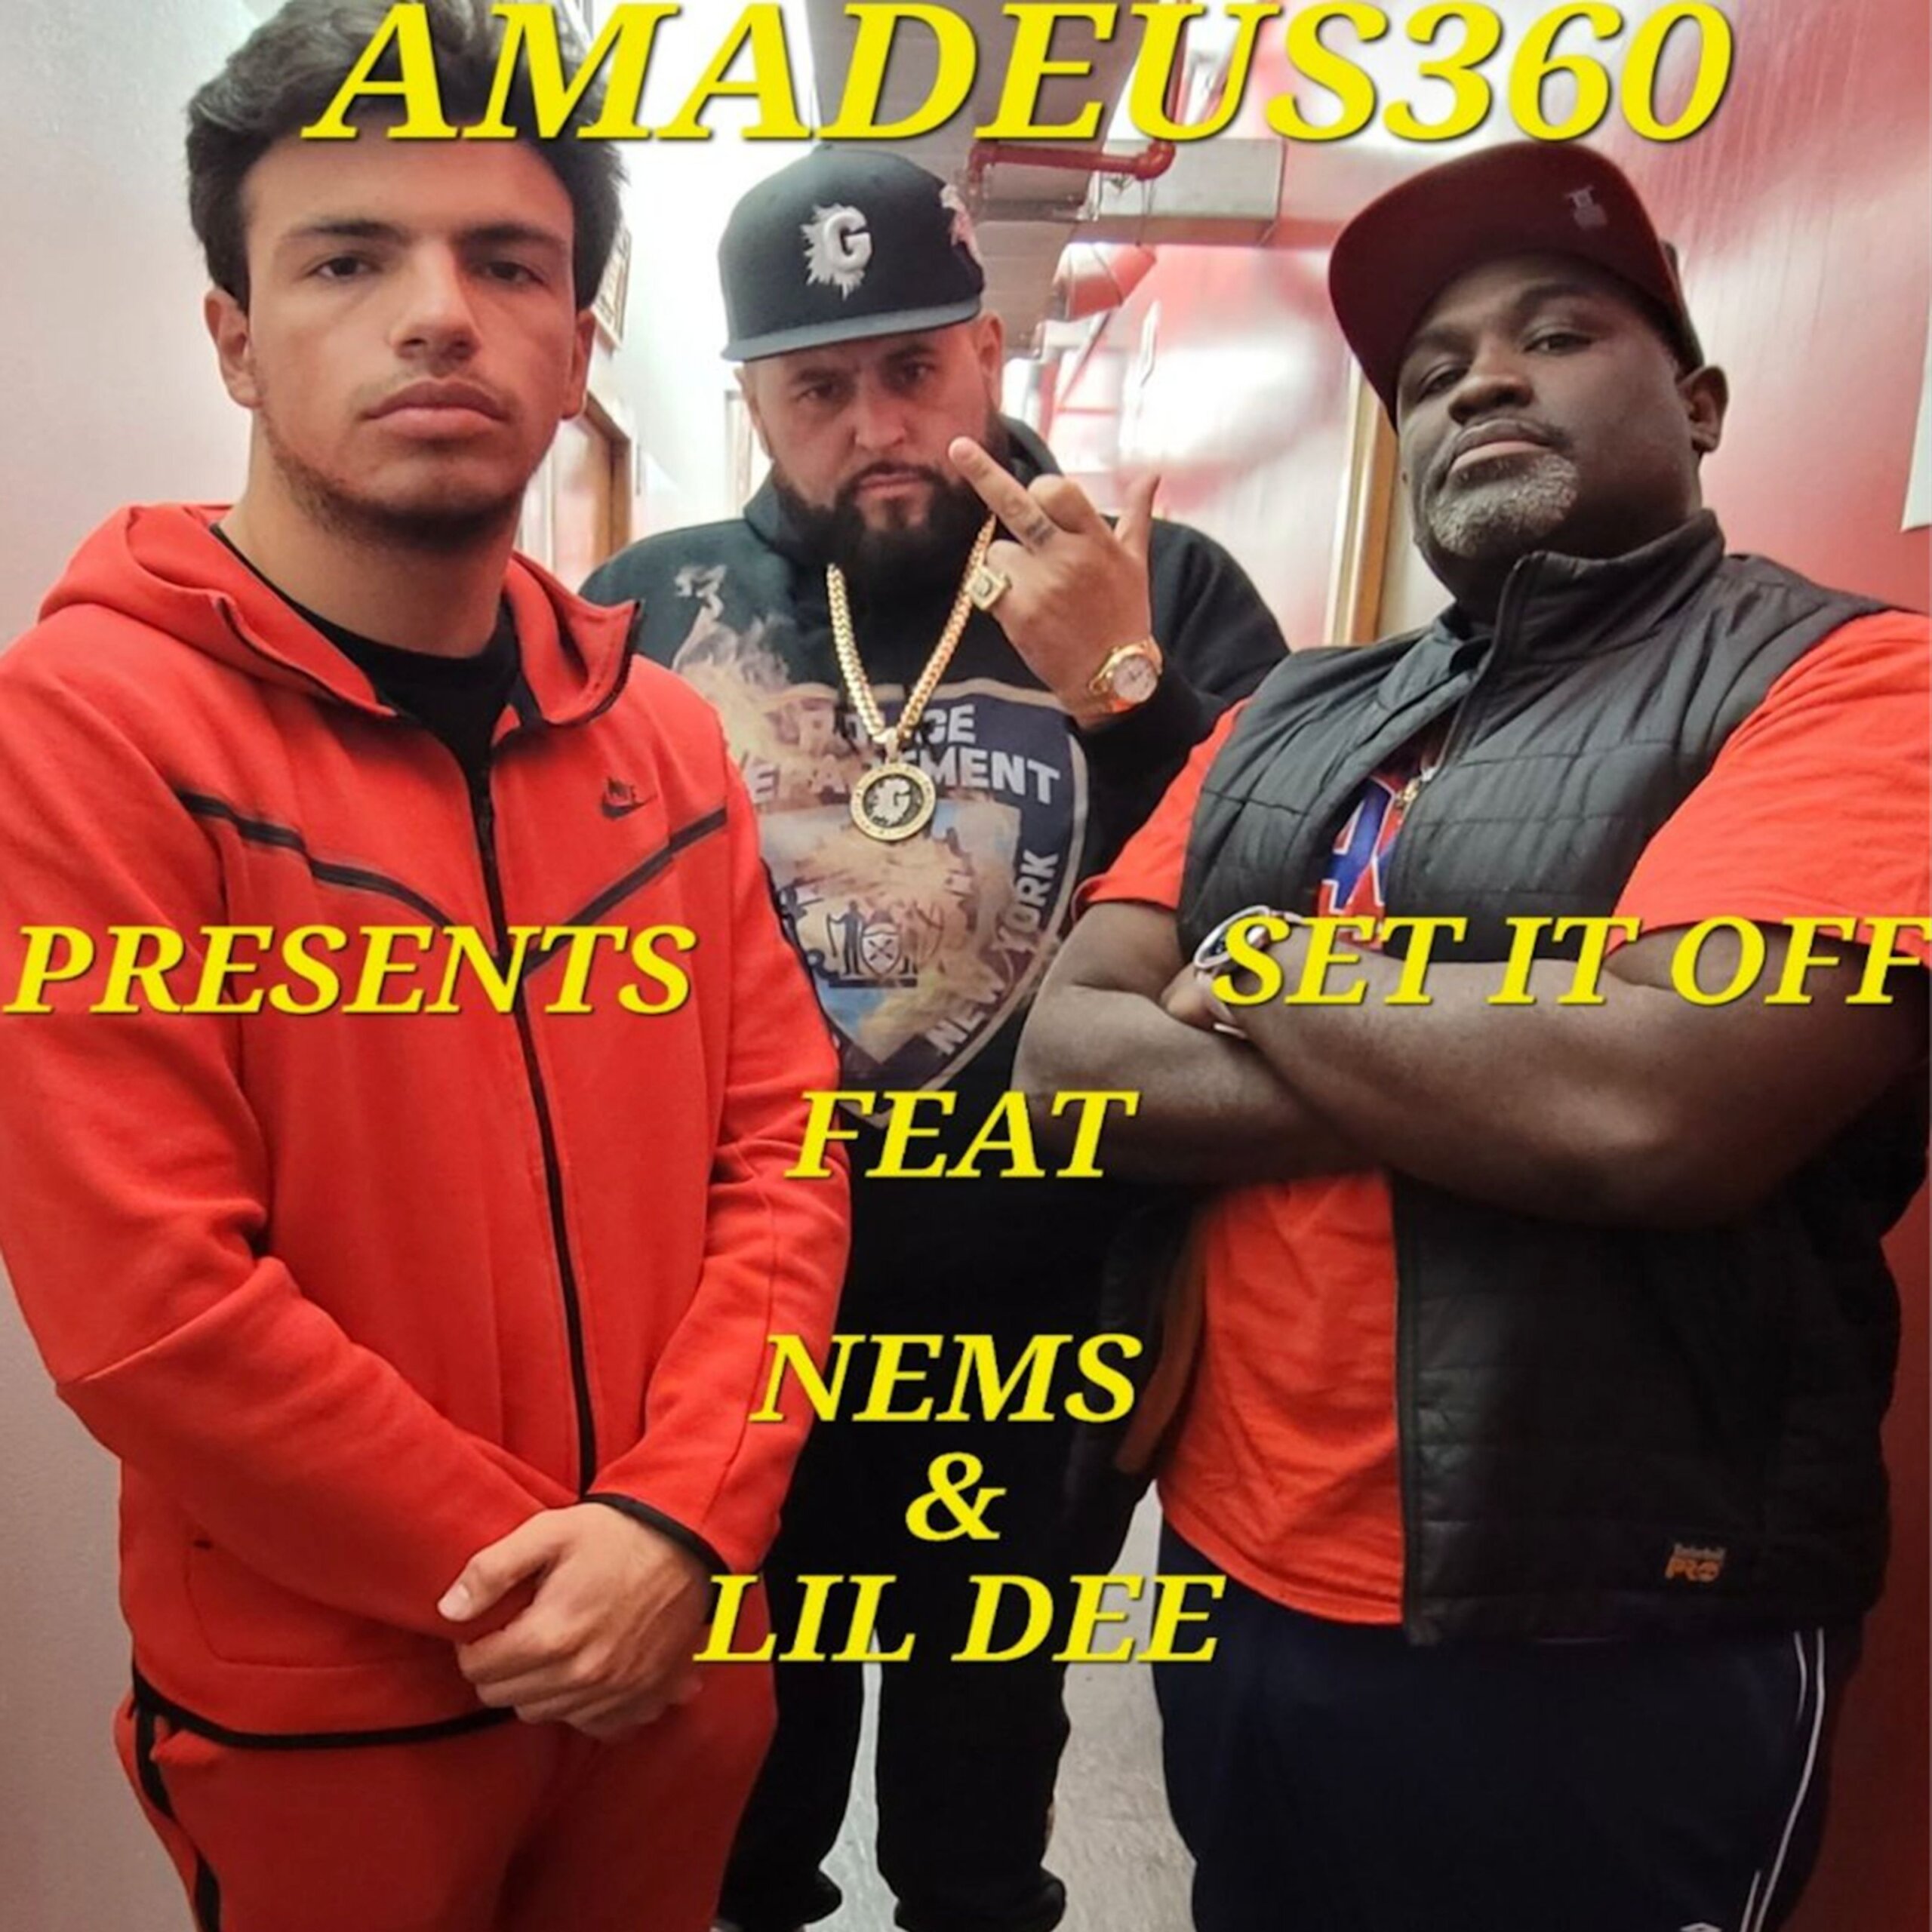 Amadeus360 feat. Nems & Lil Dee "Set It Off" (Video)